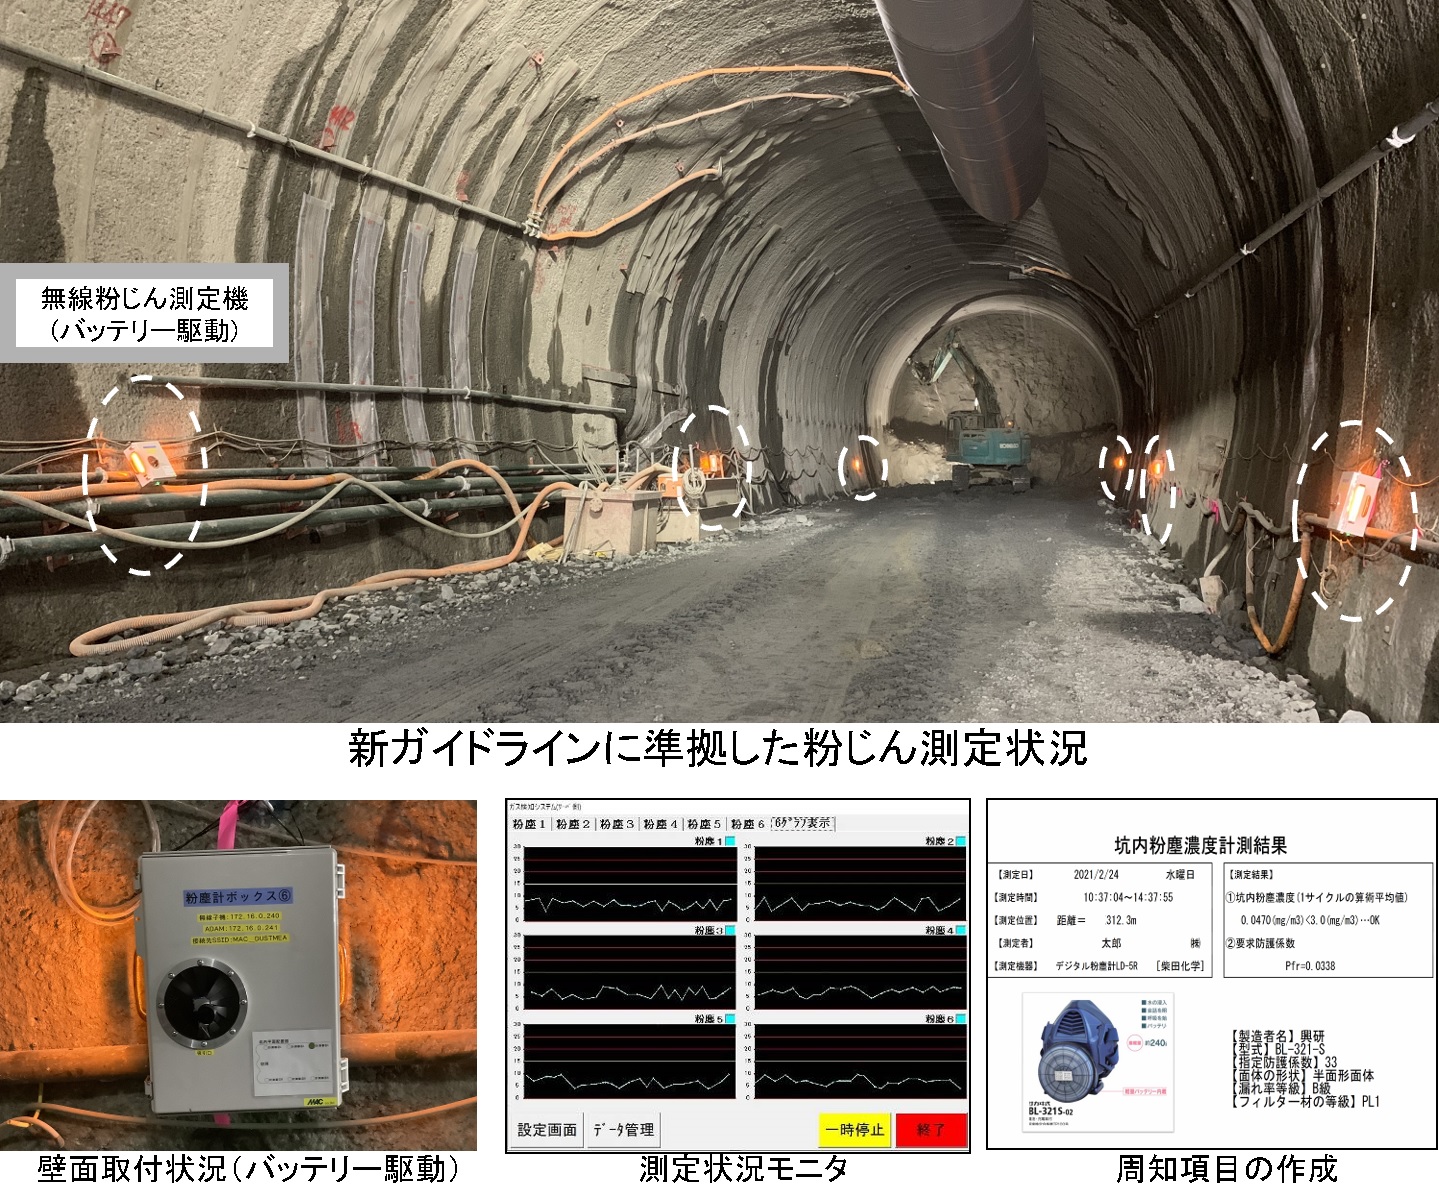 トンネル粉じん測定システムを開発